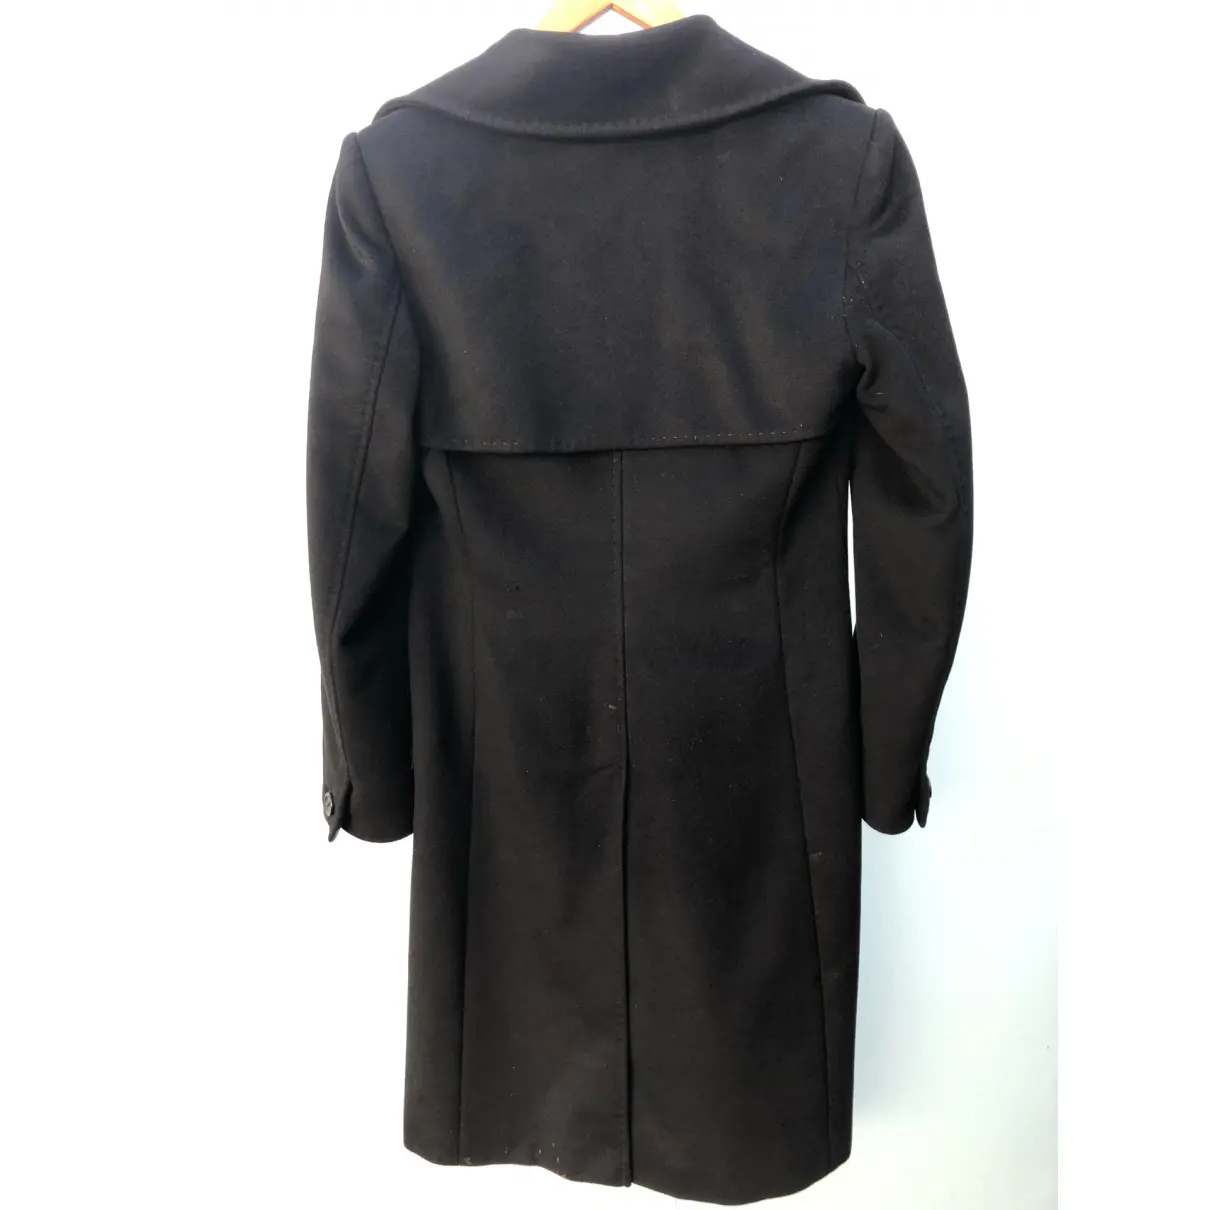 Buy Sportmax Wool coat online